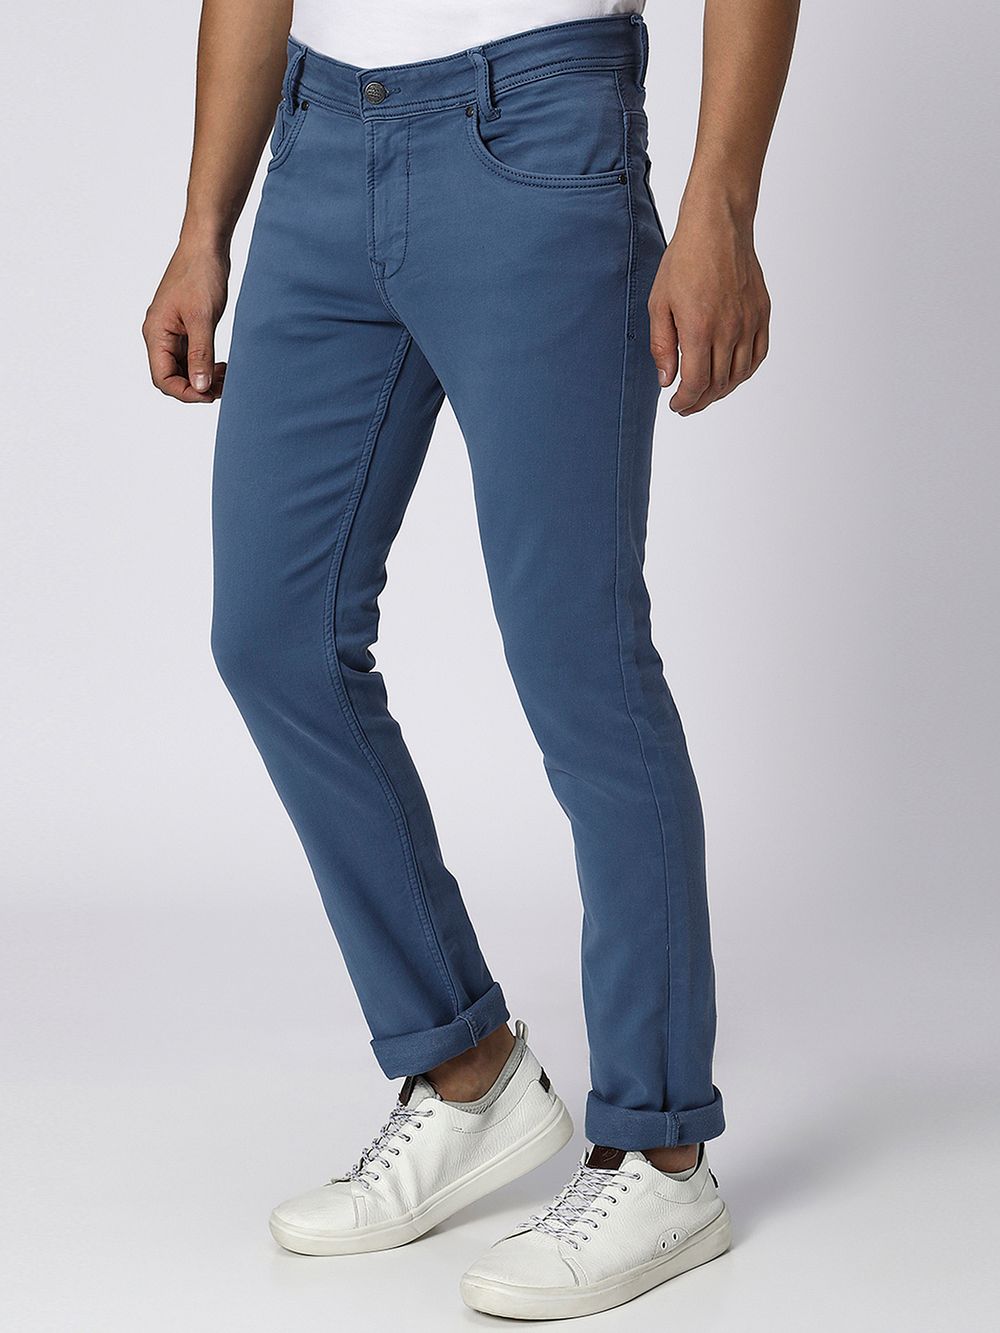 Blue Grey Super Slim Fit Stretch Jeans